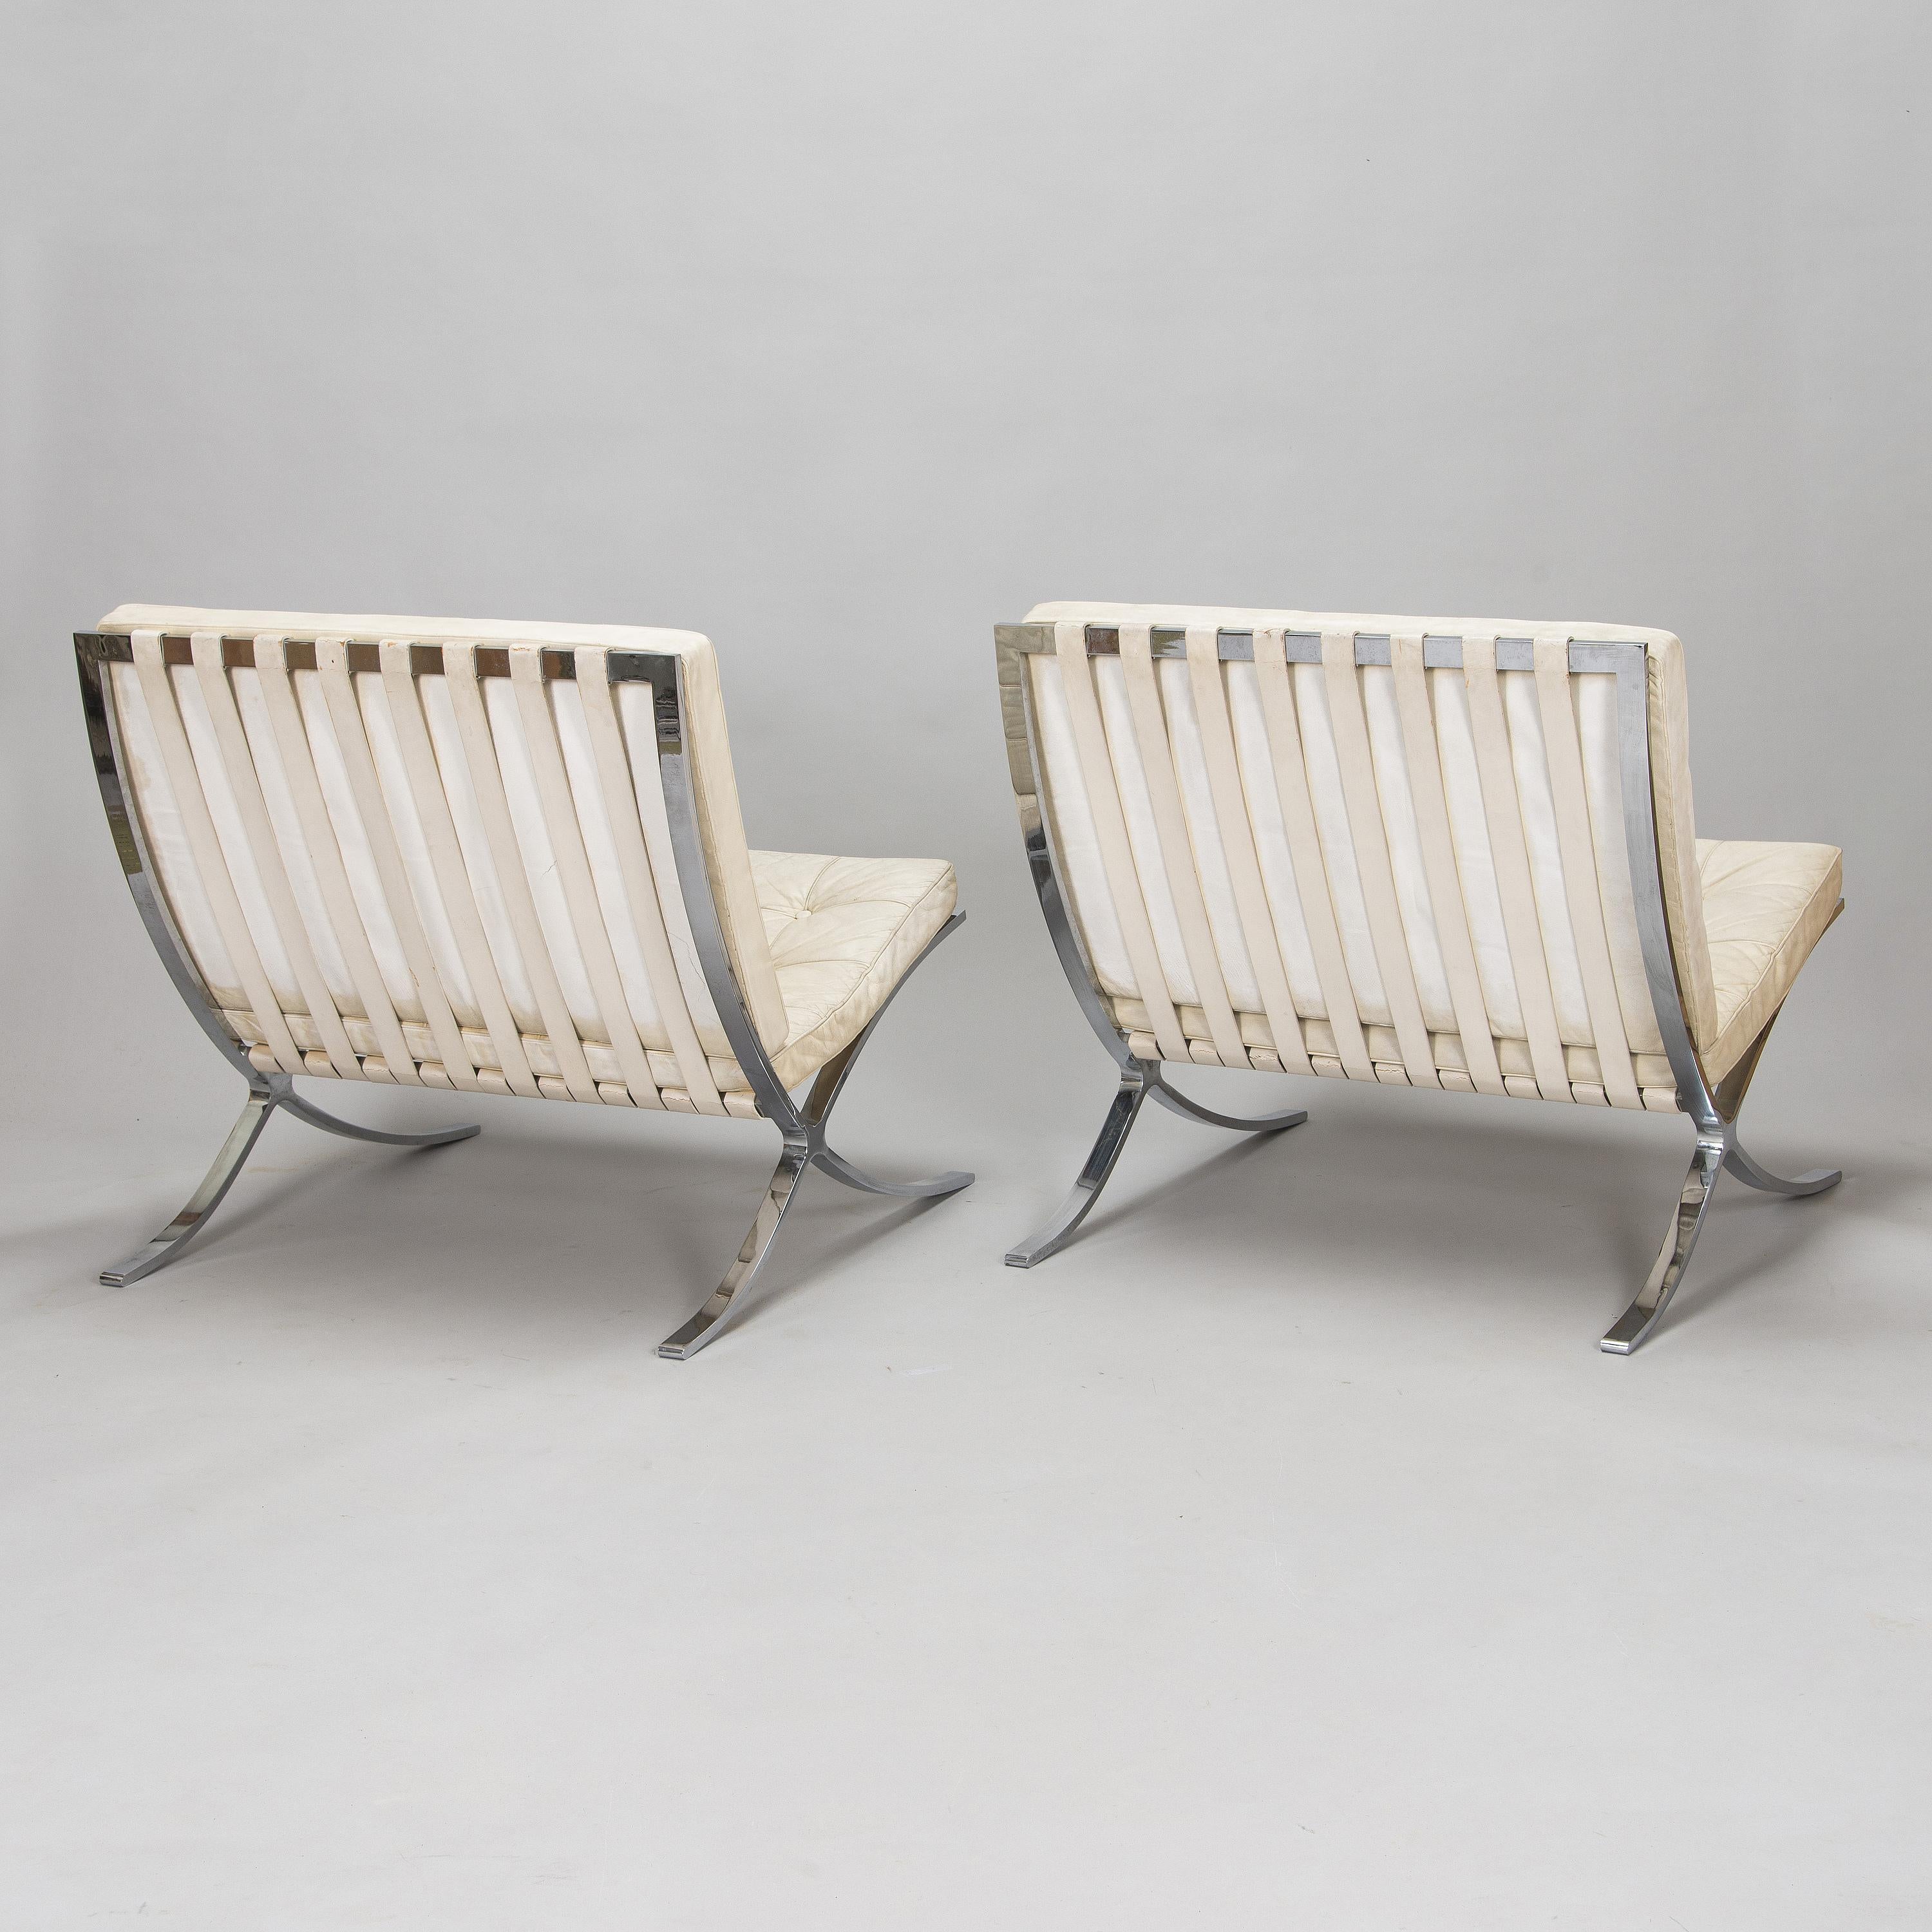 Ludwig Mies van der Rohe 'Barcelona' Stuhl für Knoll hergestellt in den USA 1965Chromstahlgestell, abnehmbare Kissen mit knochenweißem Lederbezug. Dieses Modell ist ein Original von Mies Van der Rohe, hergestellt von Know in the USA. Das Paar wurde